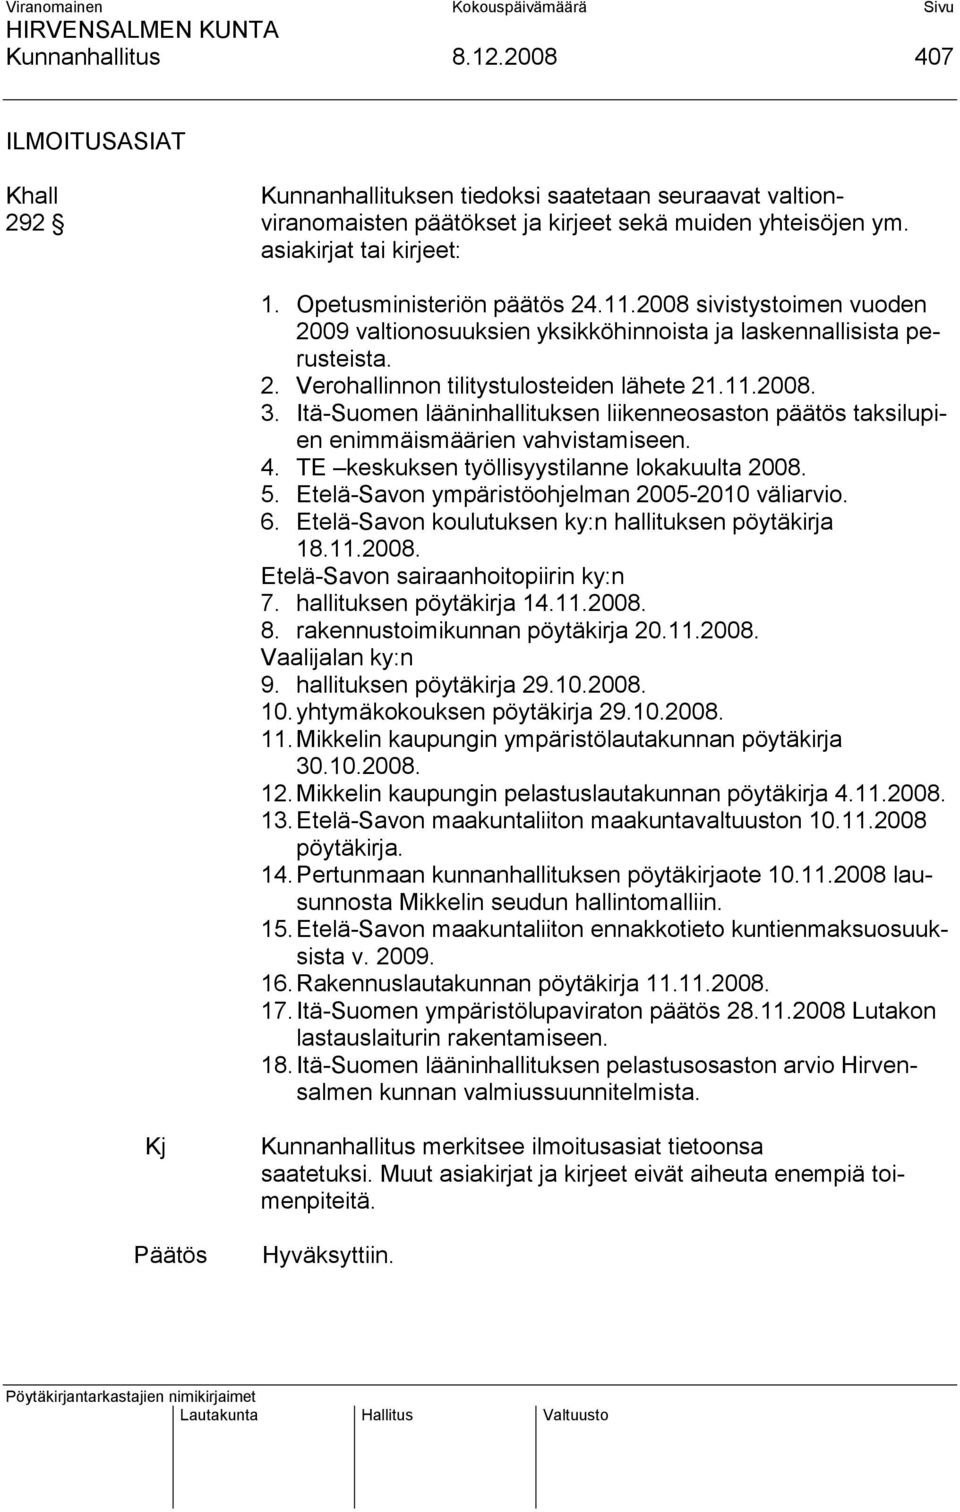 Itä-Suomen lääninhallituksen liikenneosaston päätös taksilupien enimmäismäärien vahvistamiseen. 4. TE keskuksen työllisyystilanne lokakuulta 2008. 5. Etelä-Savon ympäristöohjelman 2005-2010 väliarvio.